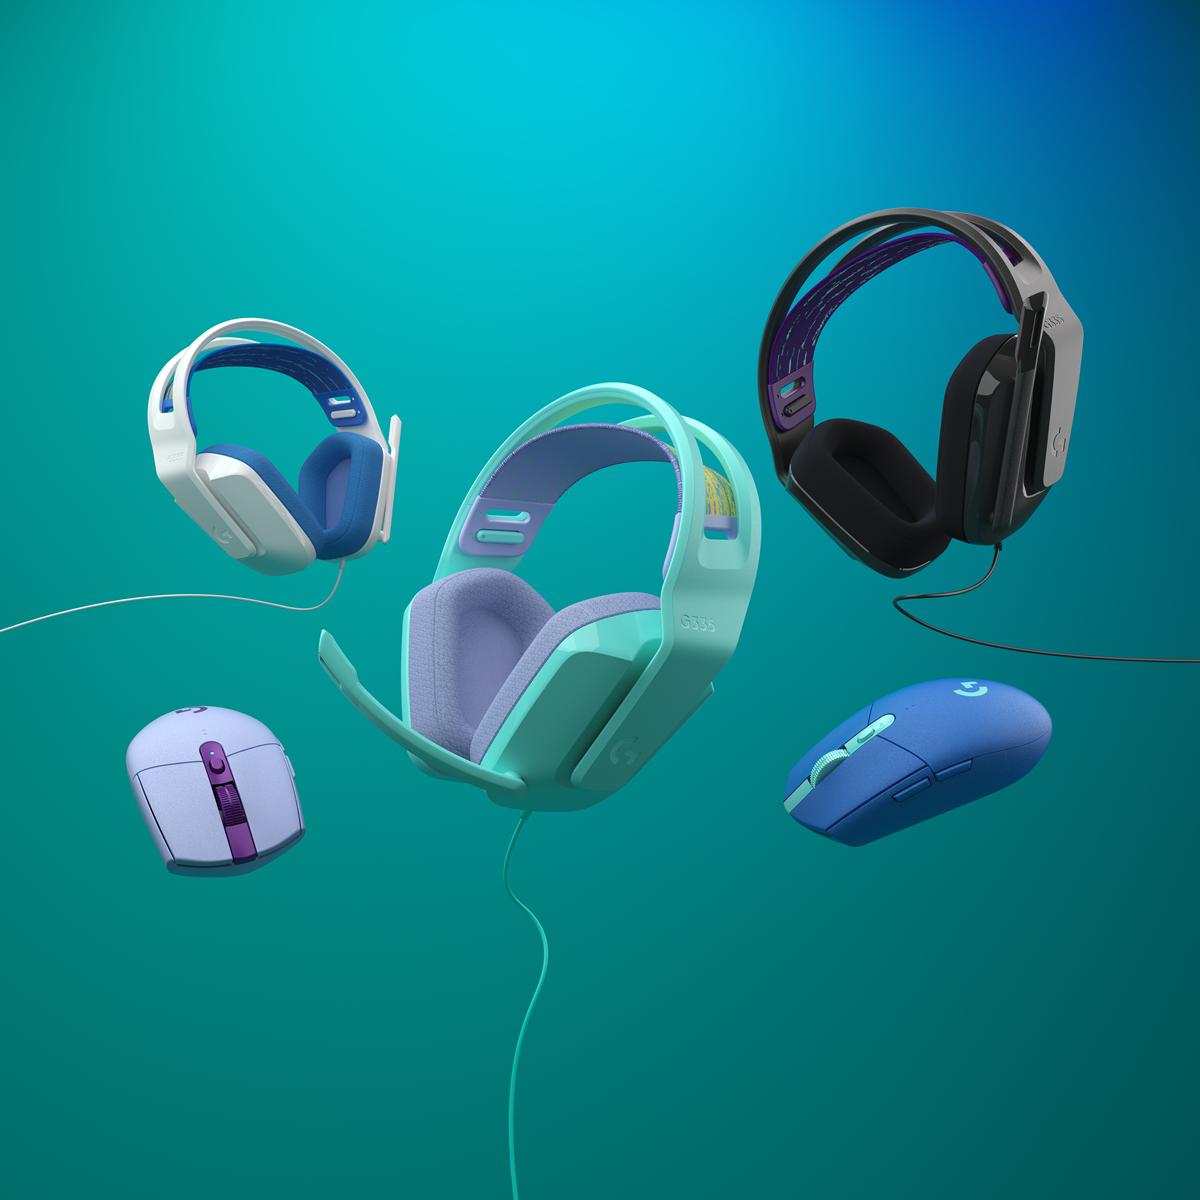 Logitech presenta sus nuevos auriculares inalámbricos para